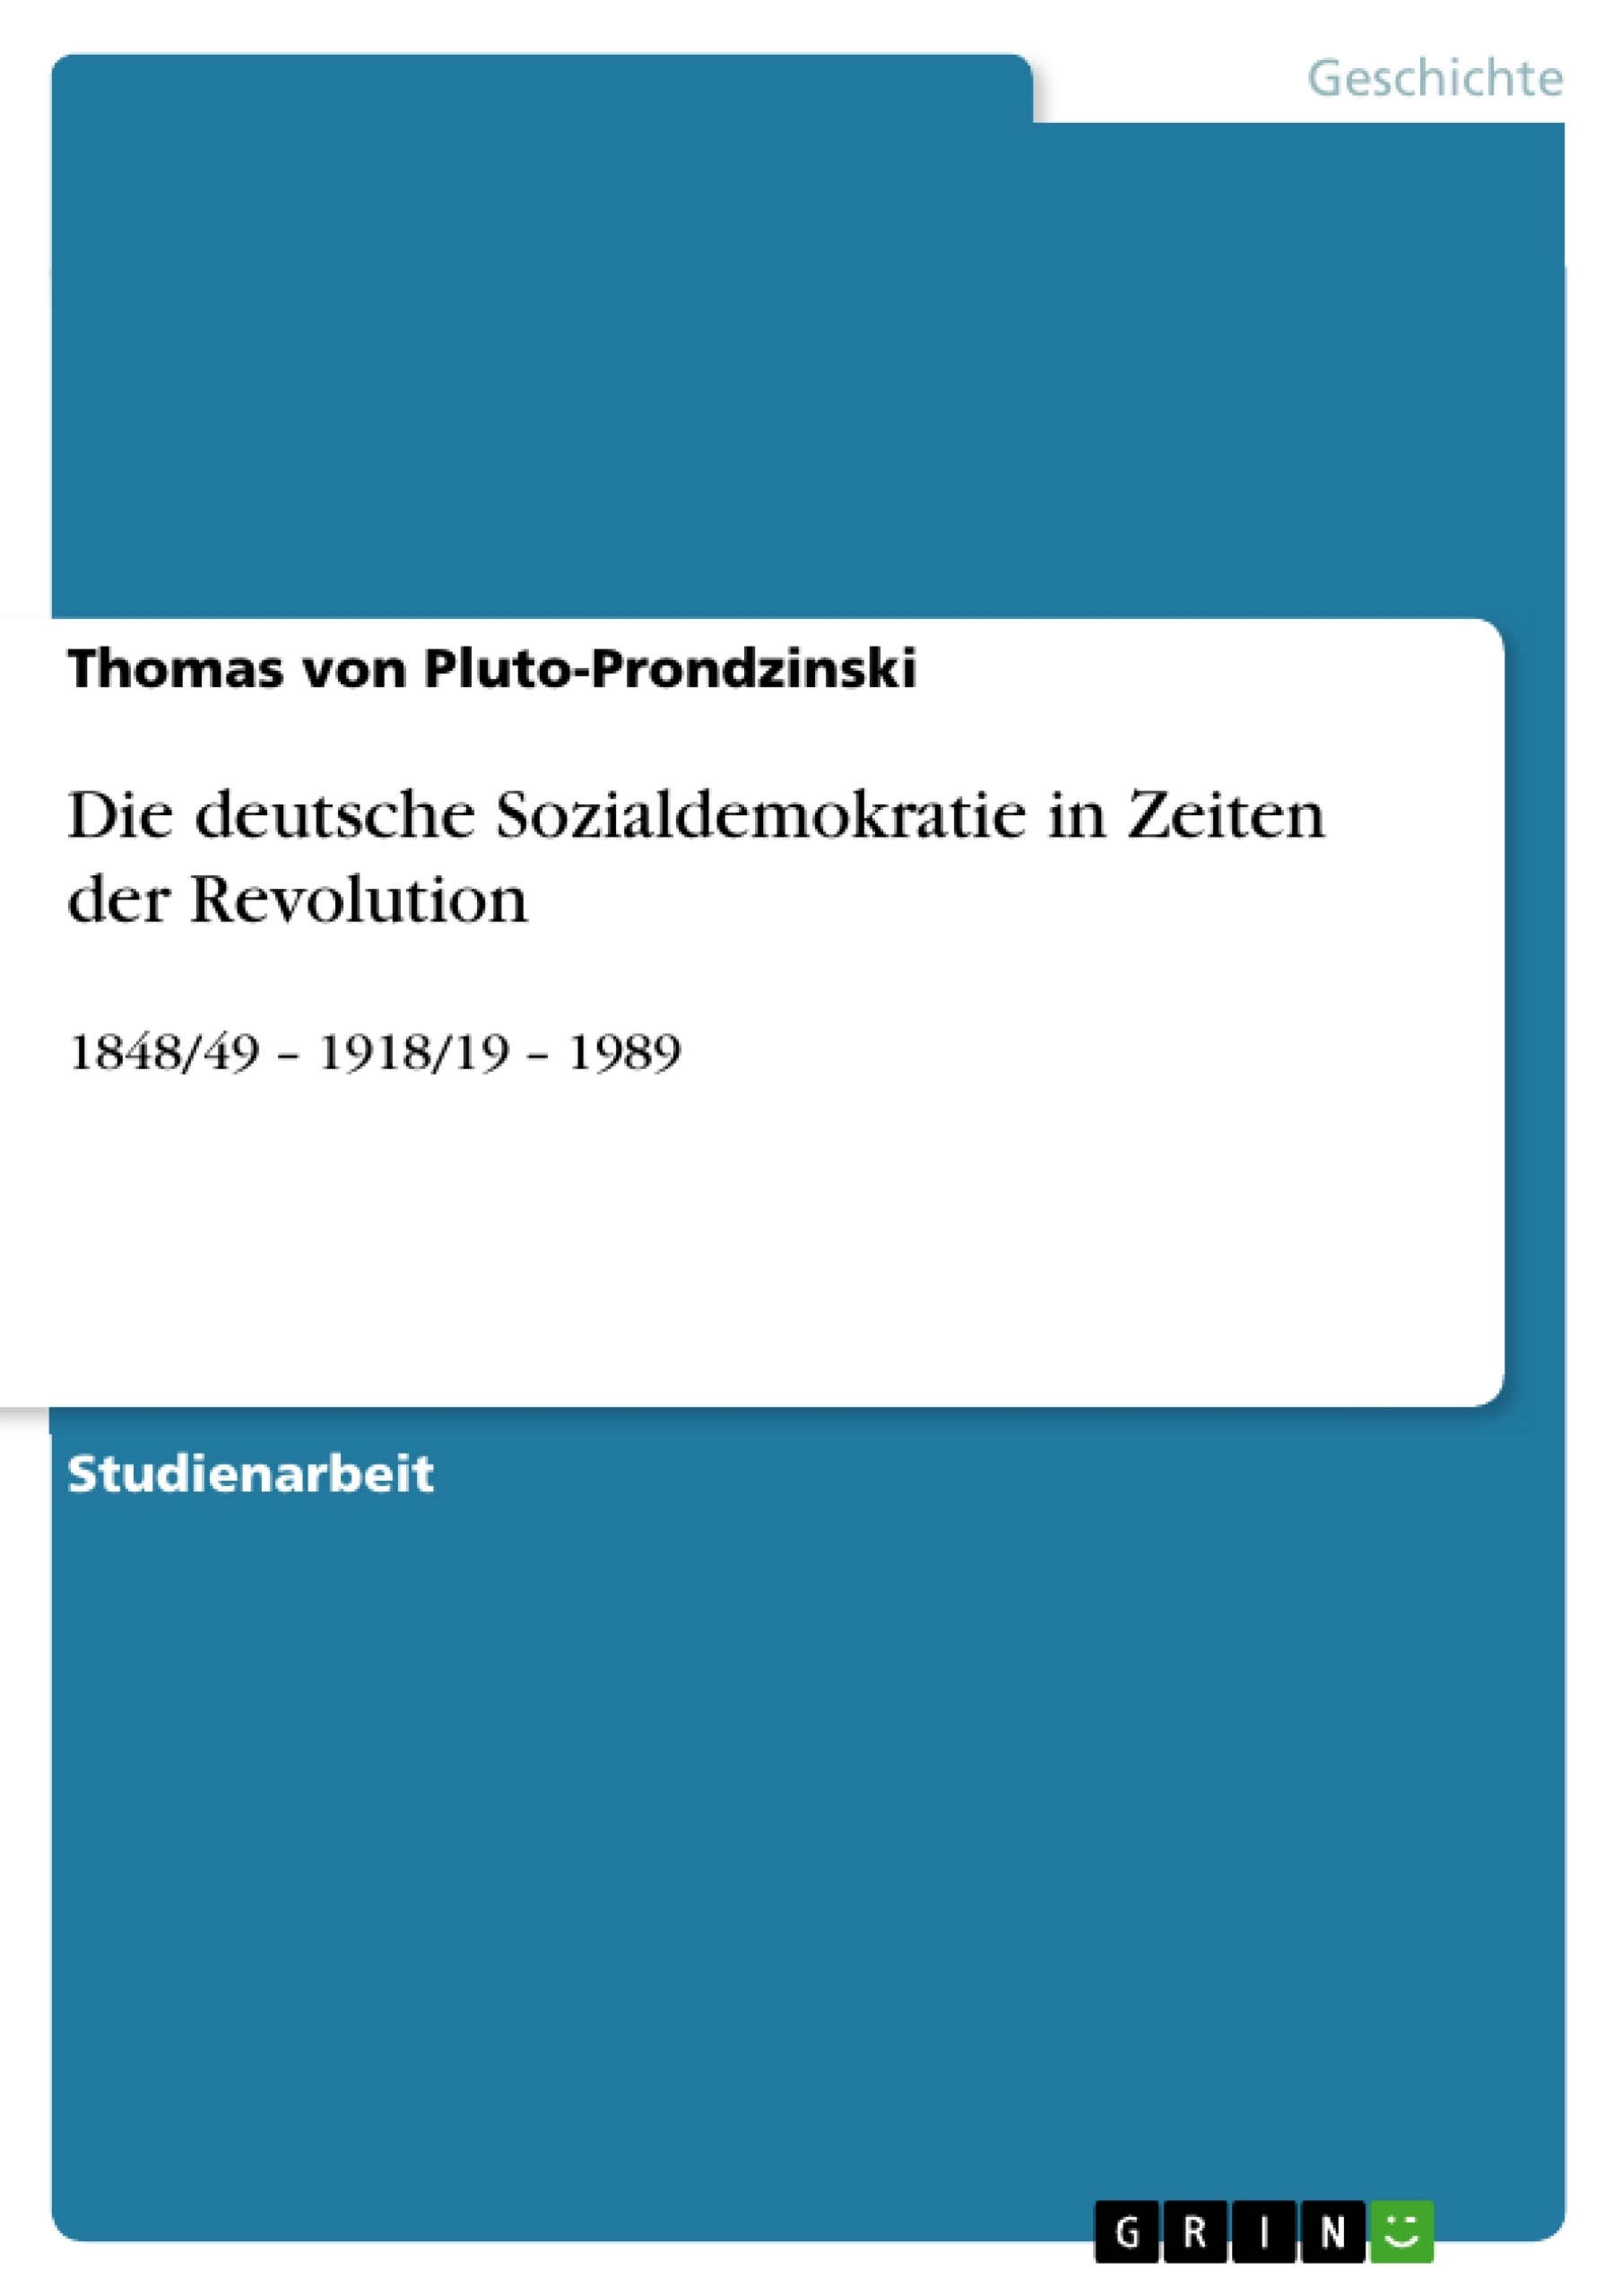 Title: Die deutsche Sozialdemokratie in Zeiten der Revolution